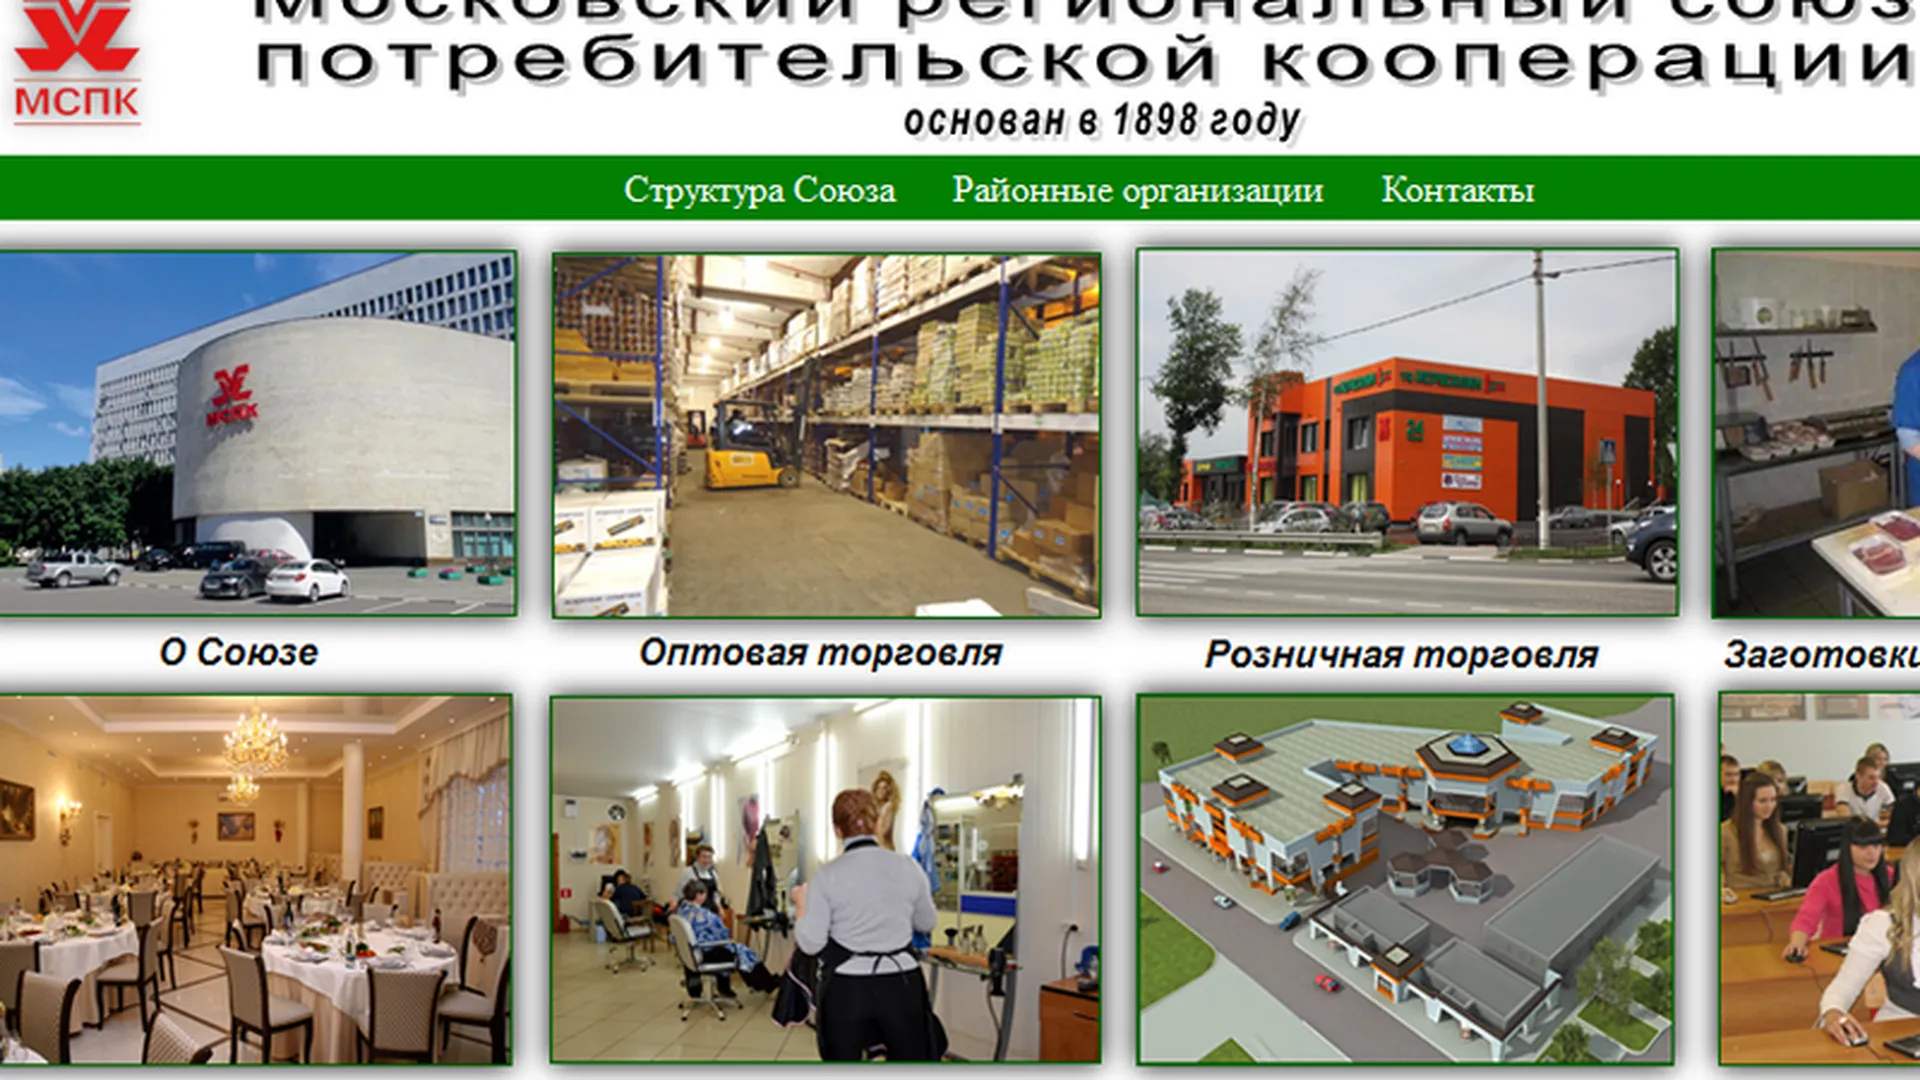 Двести магазинов МСПК вошли в проект «Социальная скидка Подмосковья»